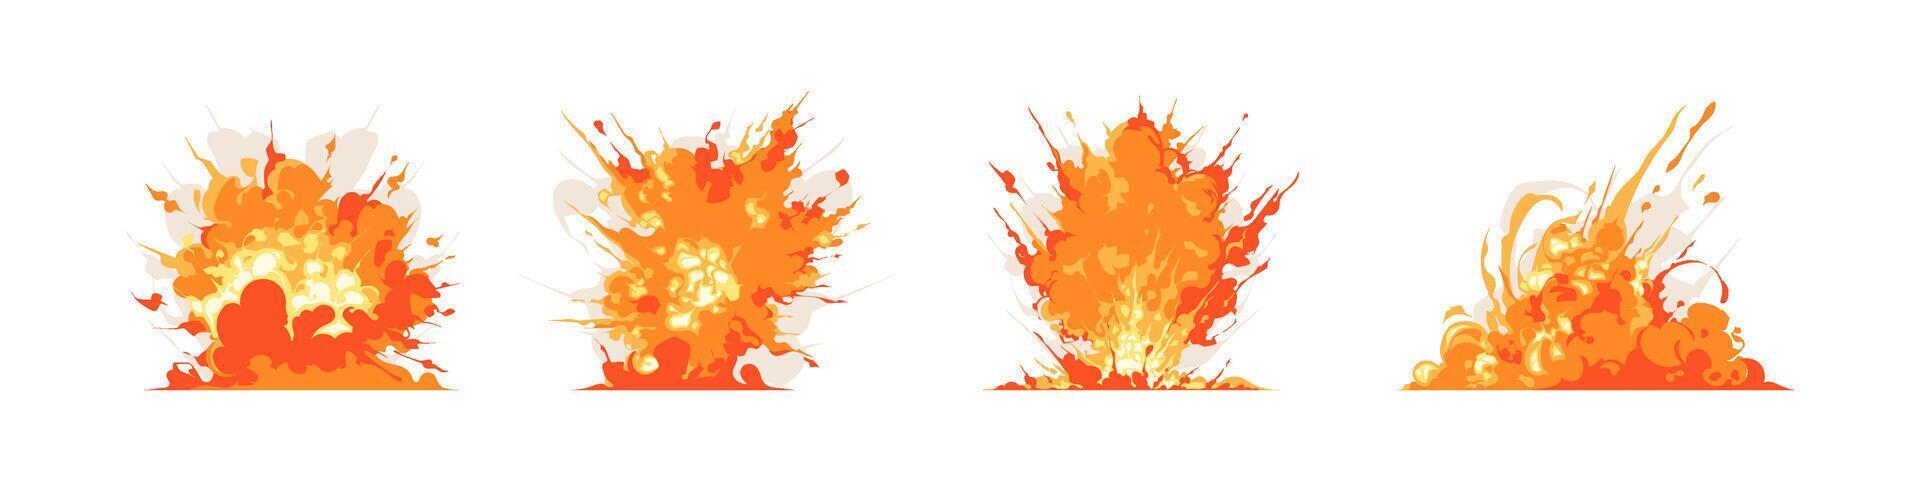 conjunto de ardiente fuego y explosión, rápido moverse rastro, salpicaduras, y fumar cómic juego efecto ilustración vector